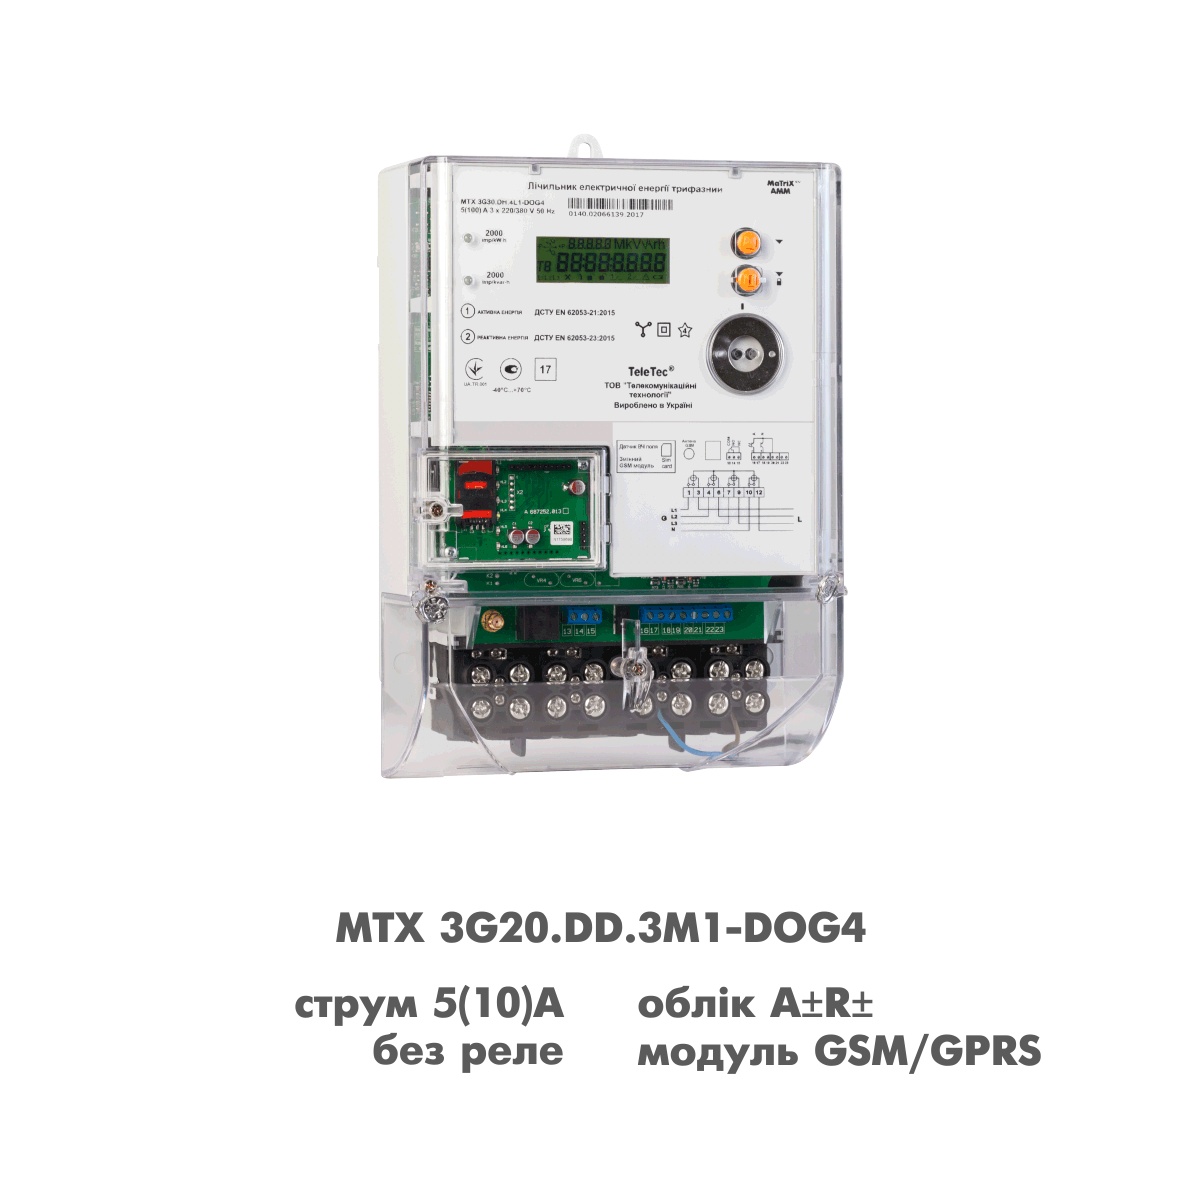 Електролічильник MTX 3G20.DD.3M1-DOG4 5(10)A для Зеленого тарифу